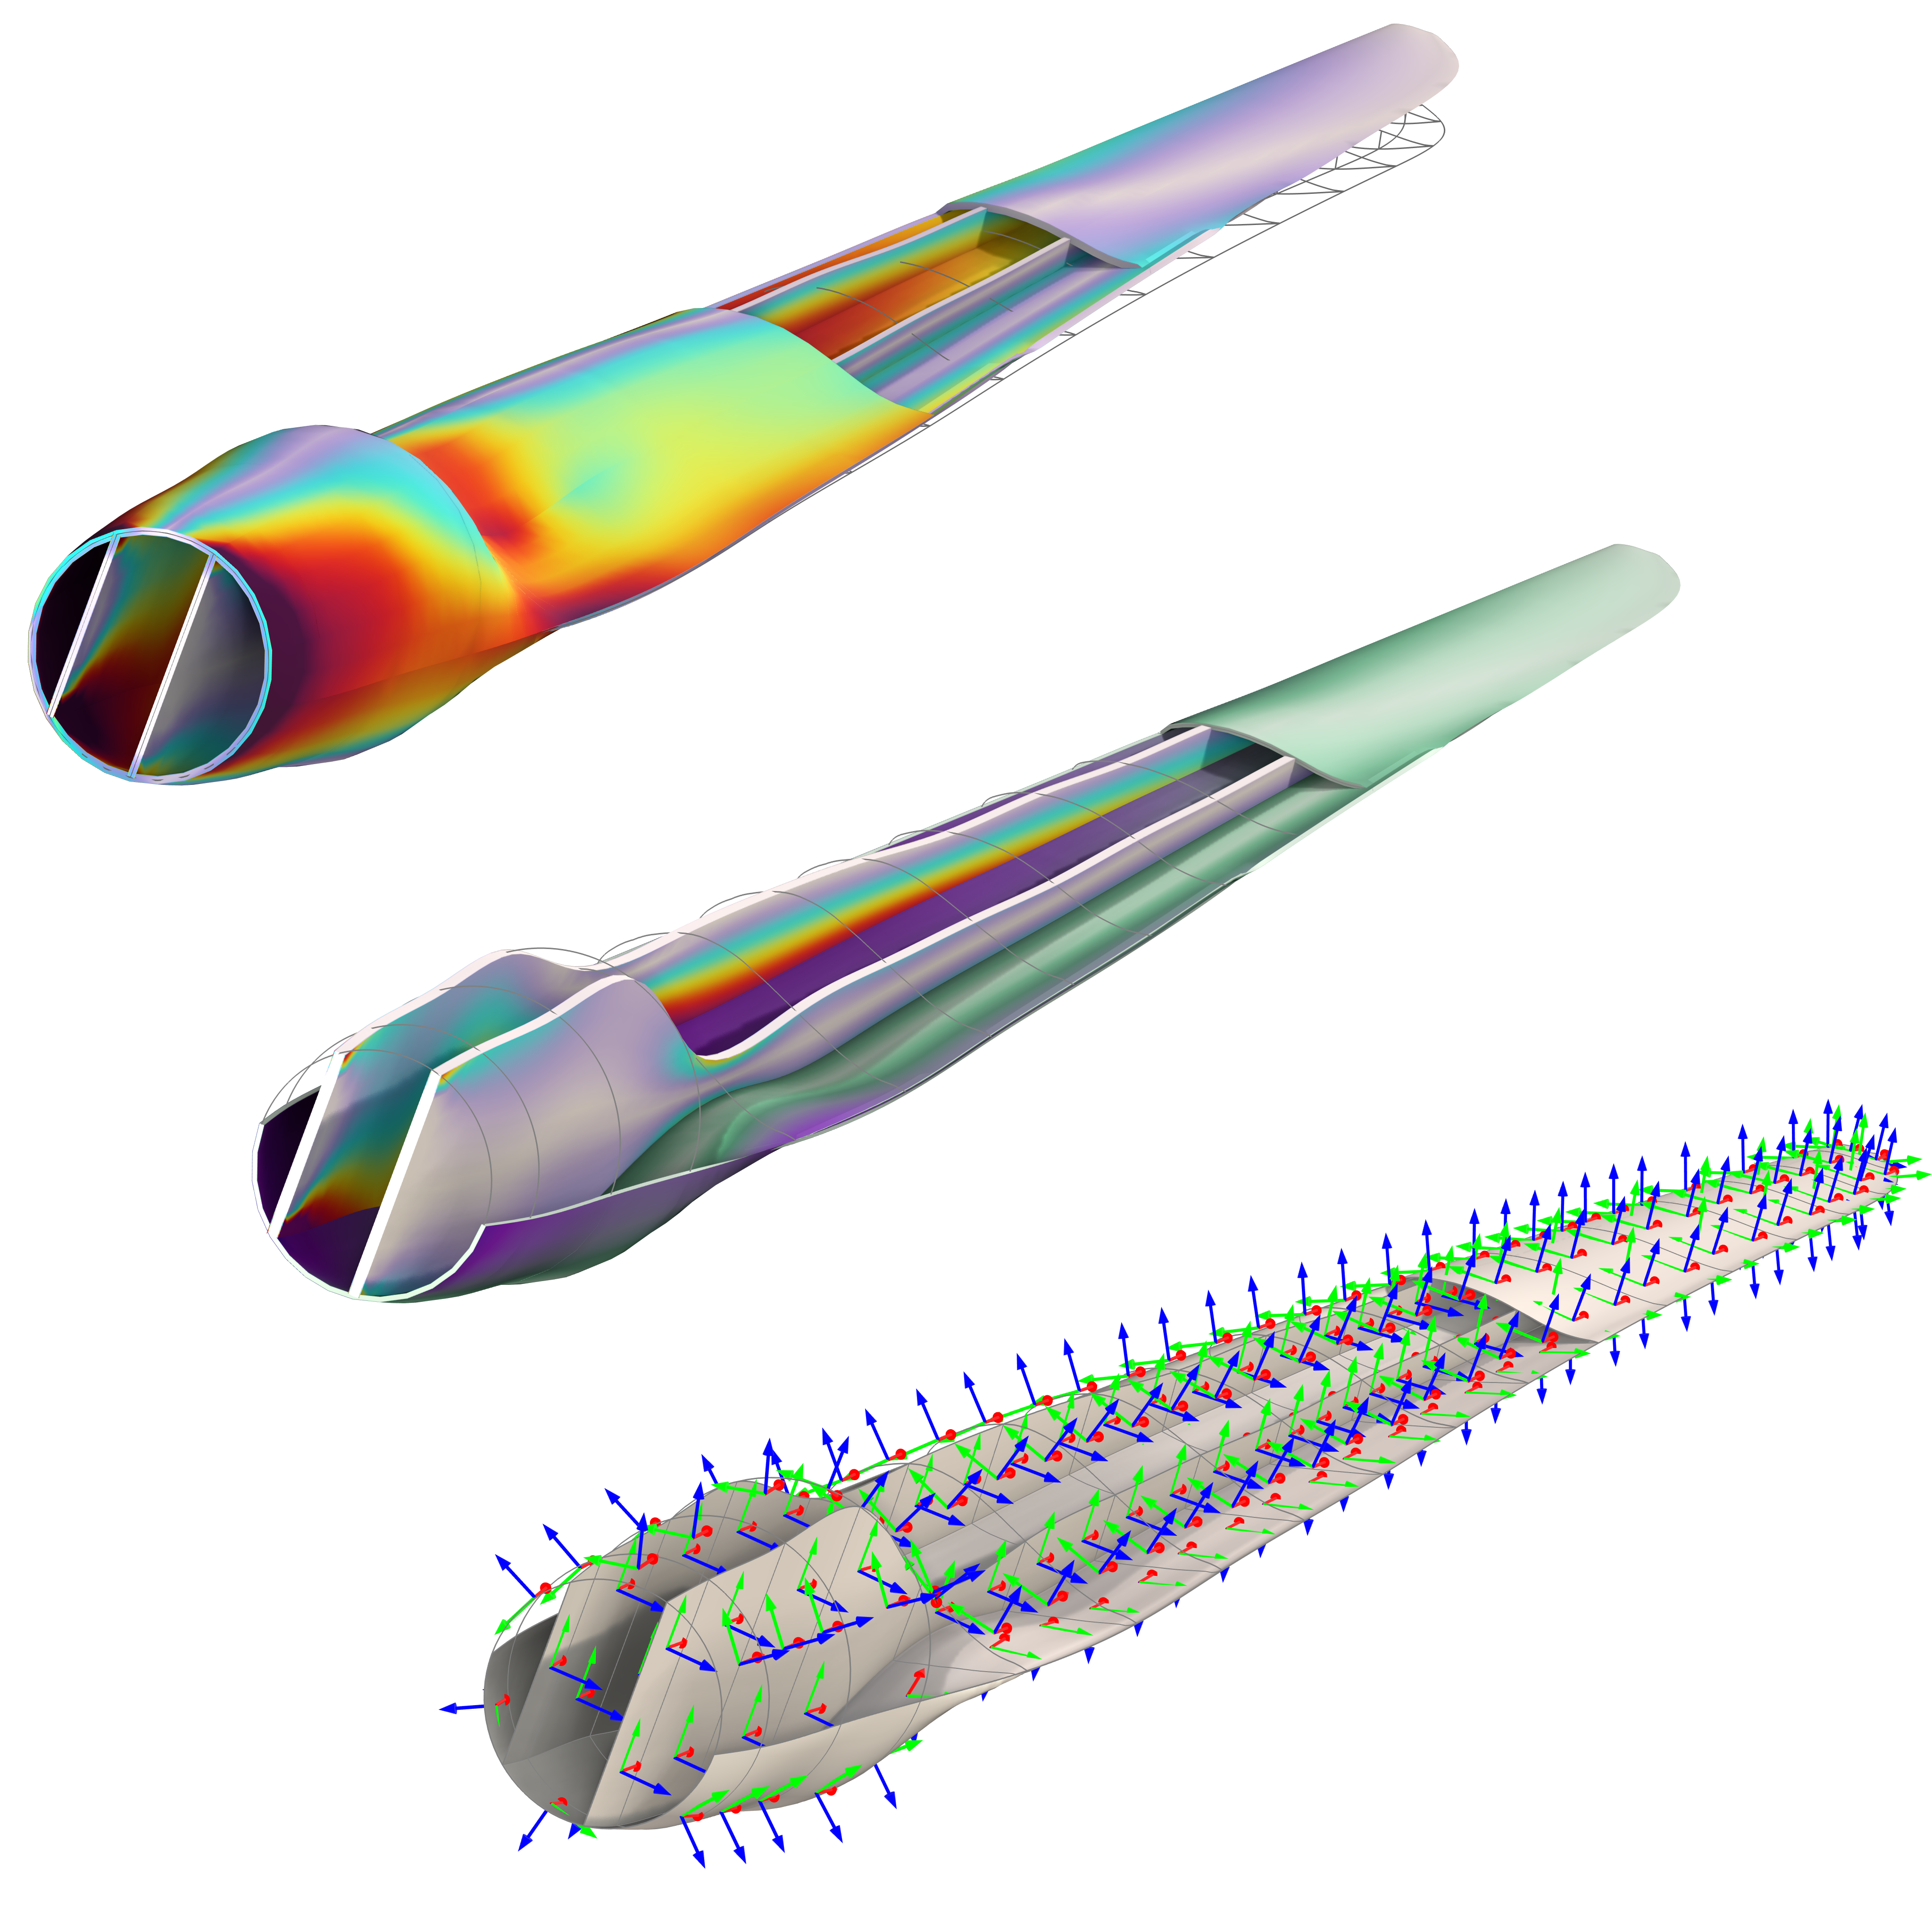 3枚の風力発電機ブレードの表皮応力 (左), スパー応力 (中), シェル局所座標系 (右) を示します.